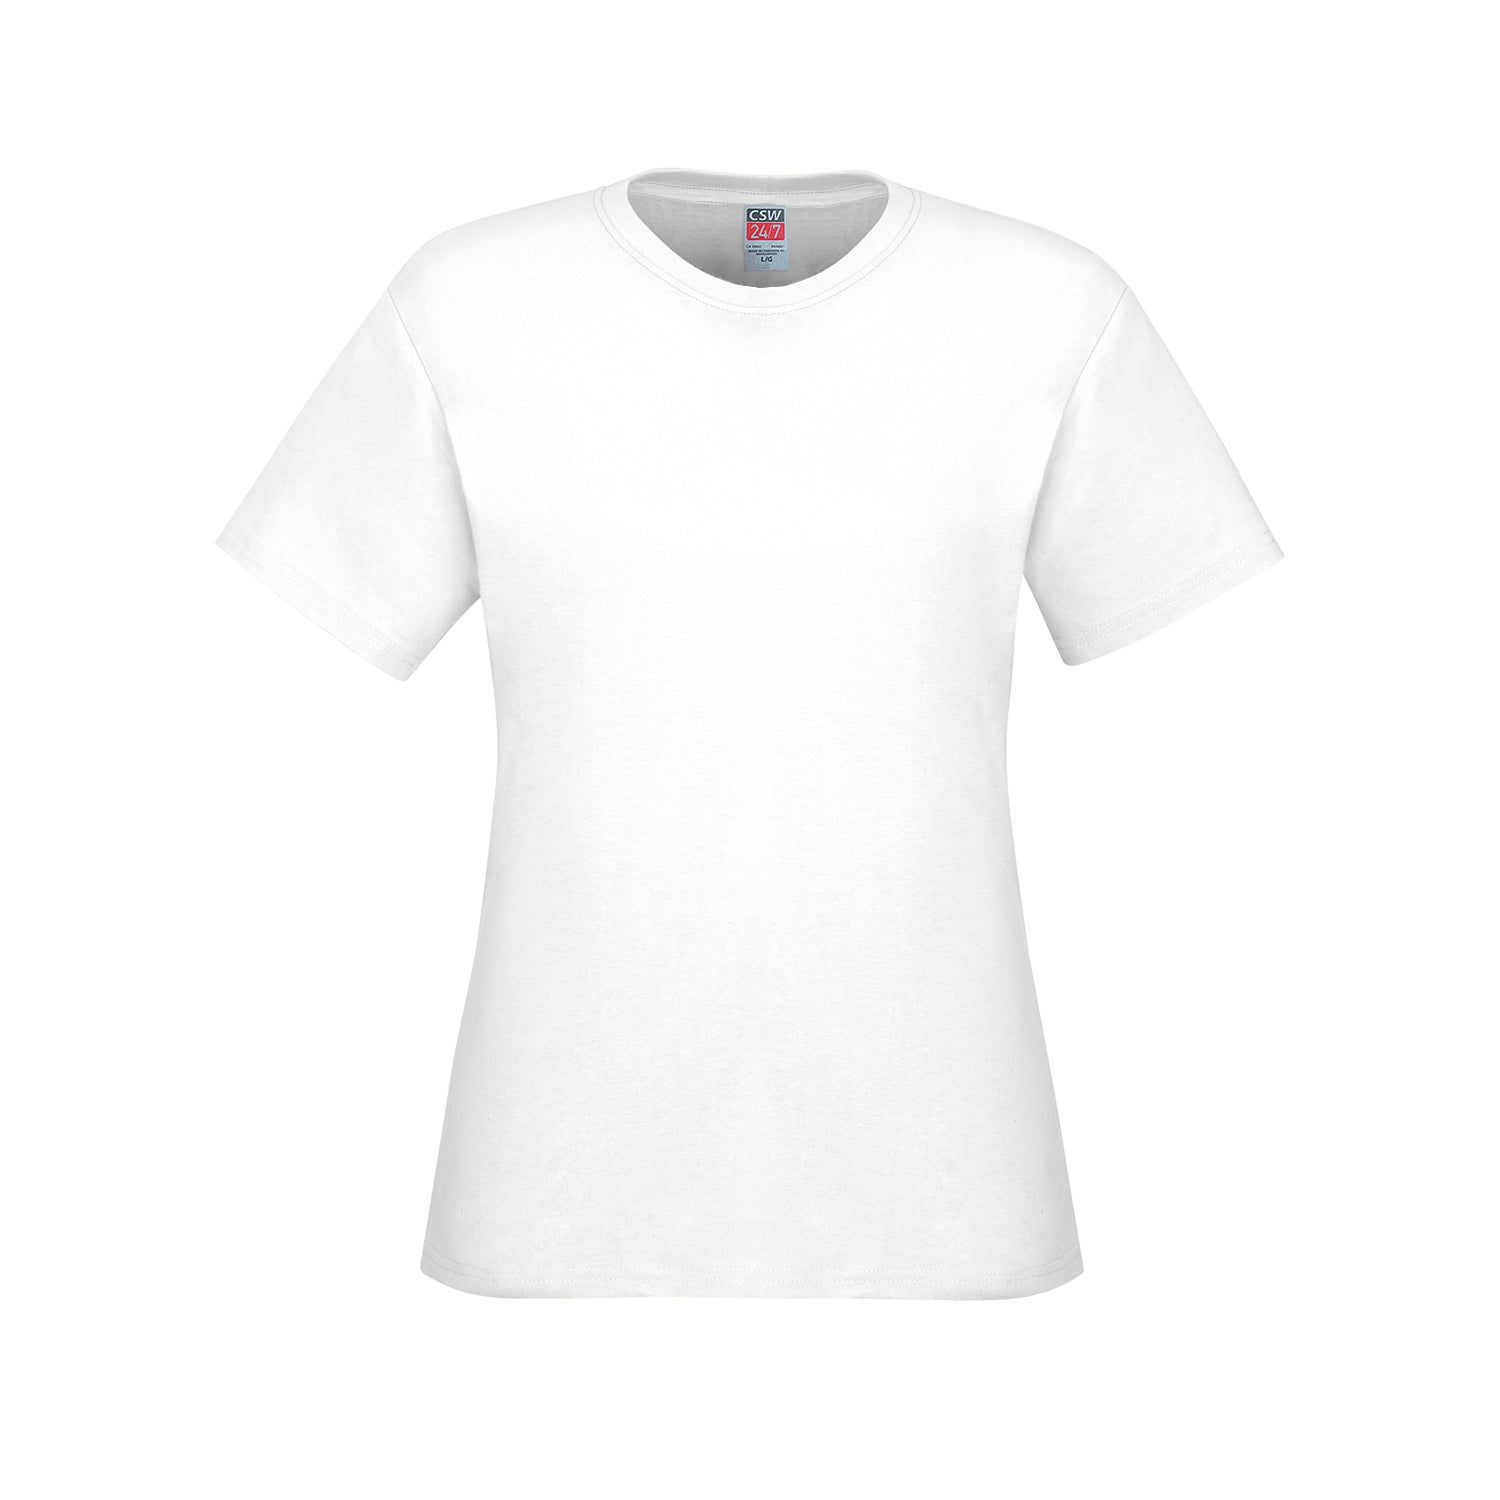 S05611 - Parkour - Ladies Crew Neck Cotton T-Shirt - White /